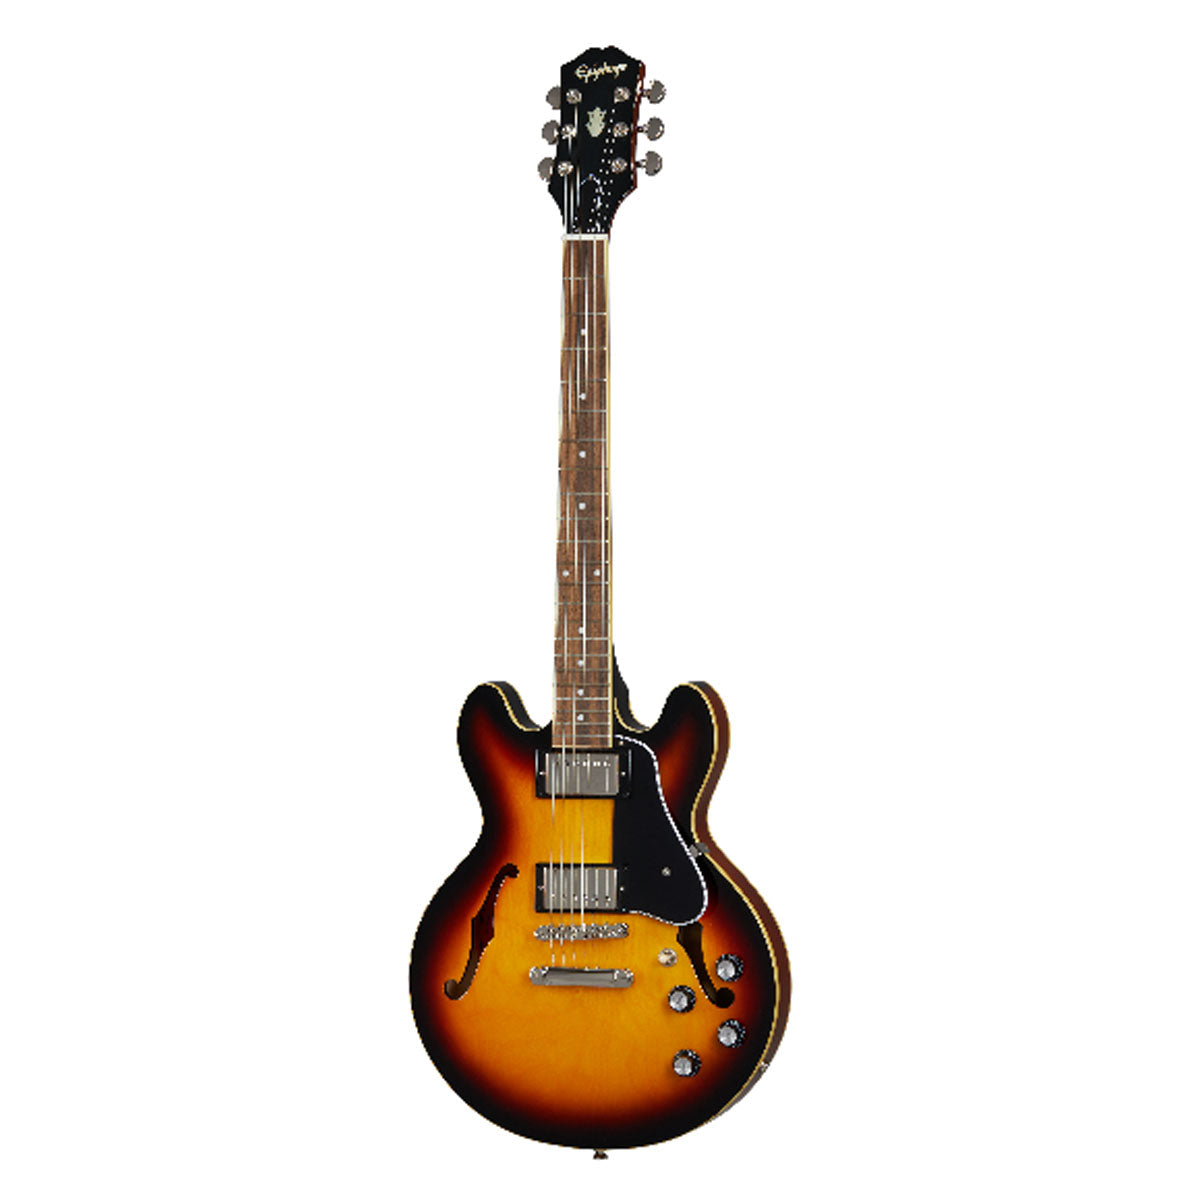 Epiphone ES-339 Electric Guitar Semi-Hollow Vintage Sunburst - IGES339VSNH1